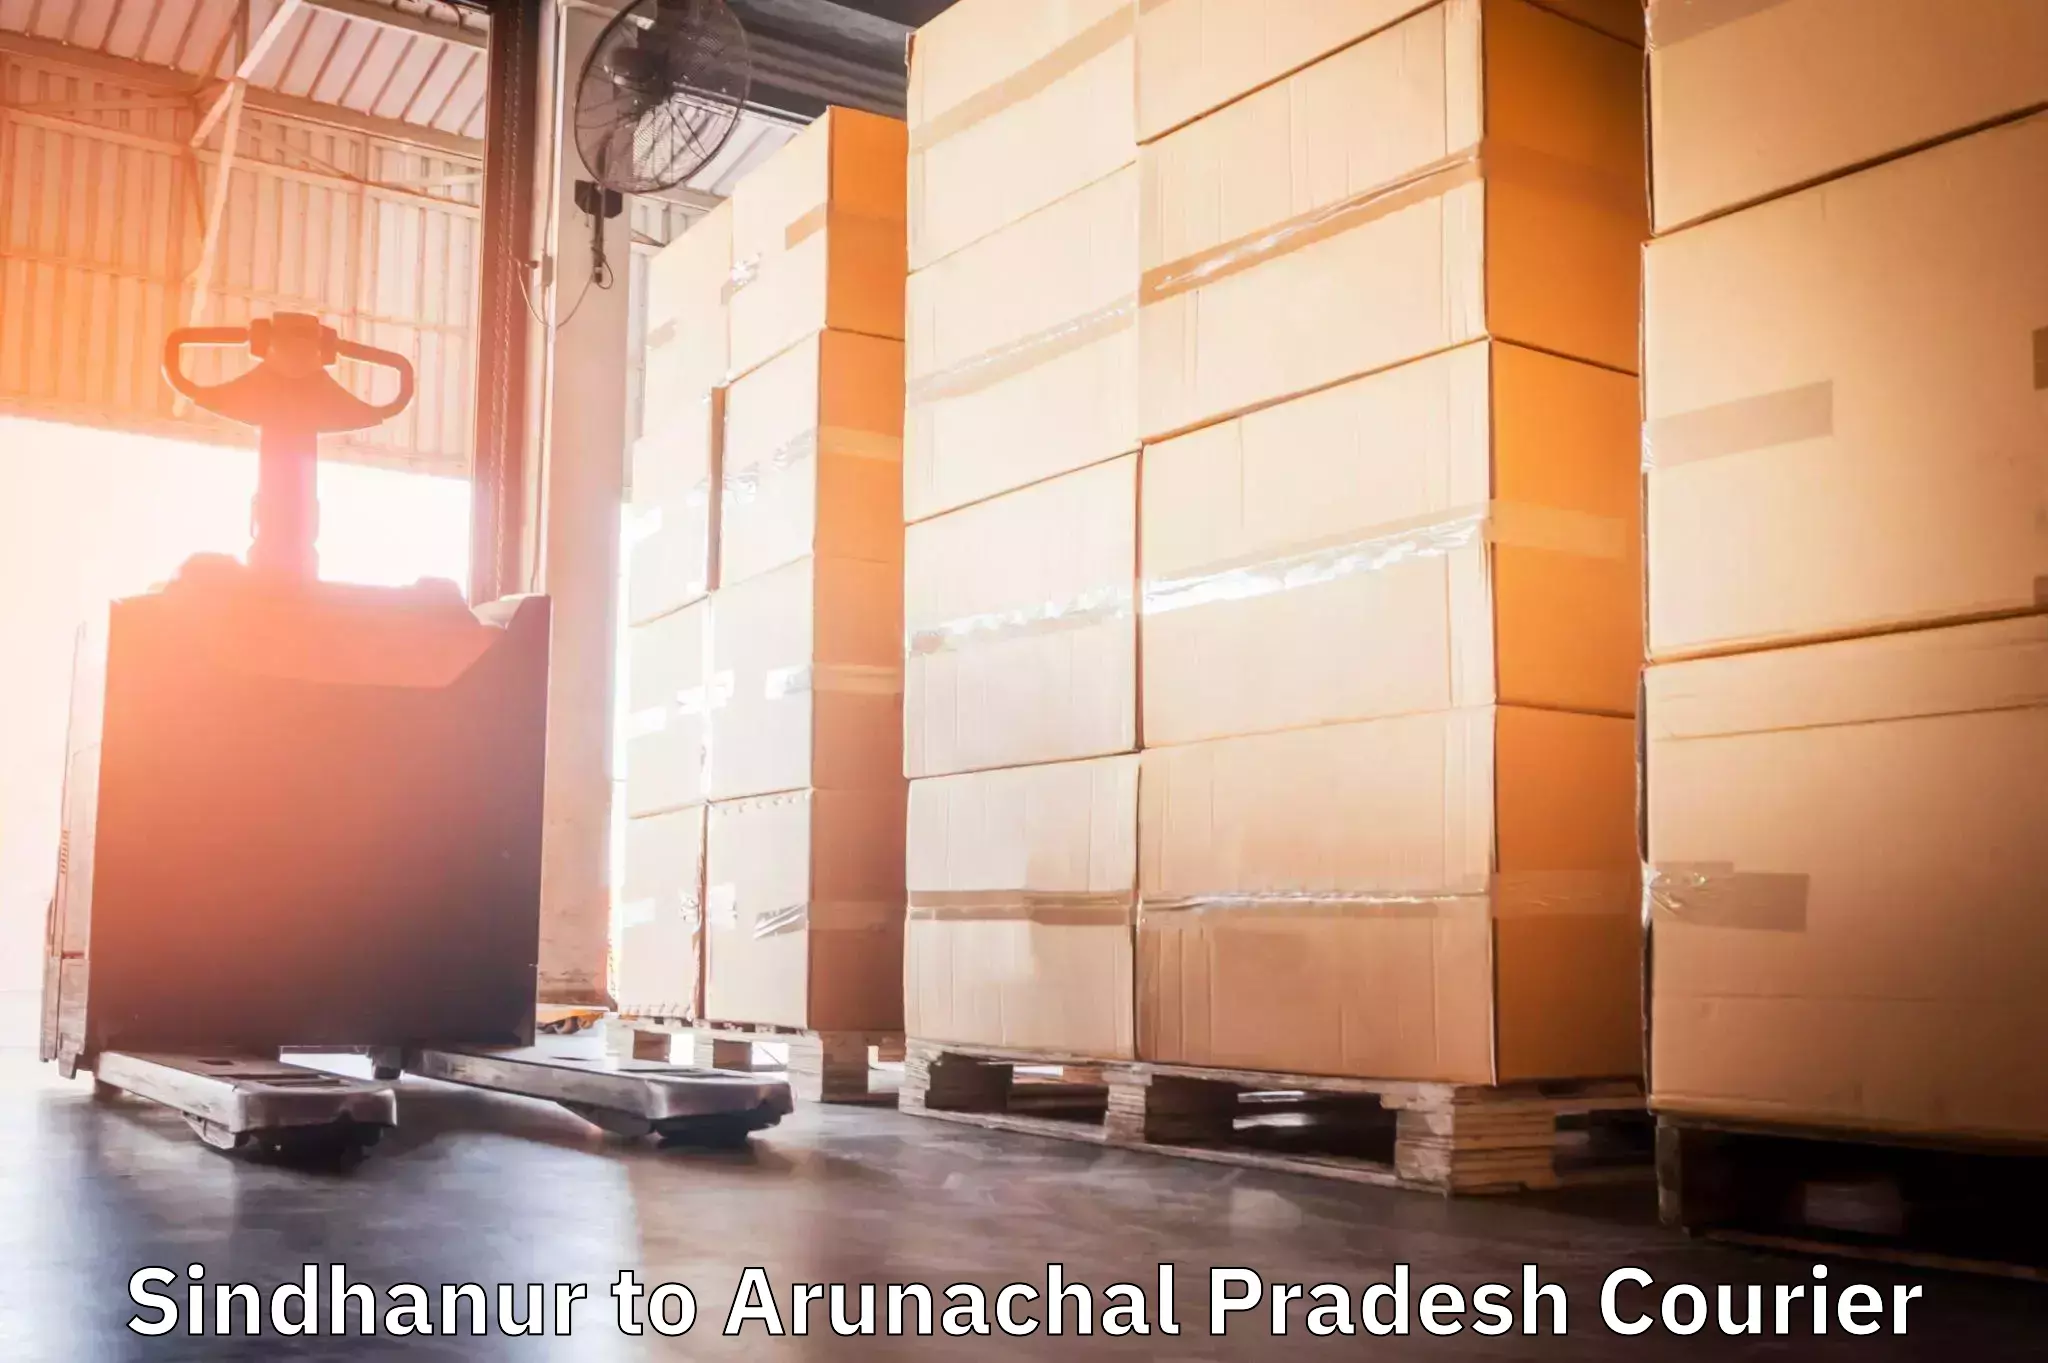 Flexible delivery schedules Sindhanur to Arunachal Pradesh